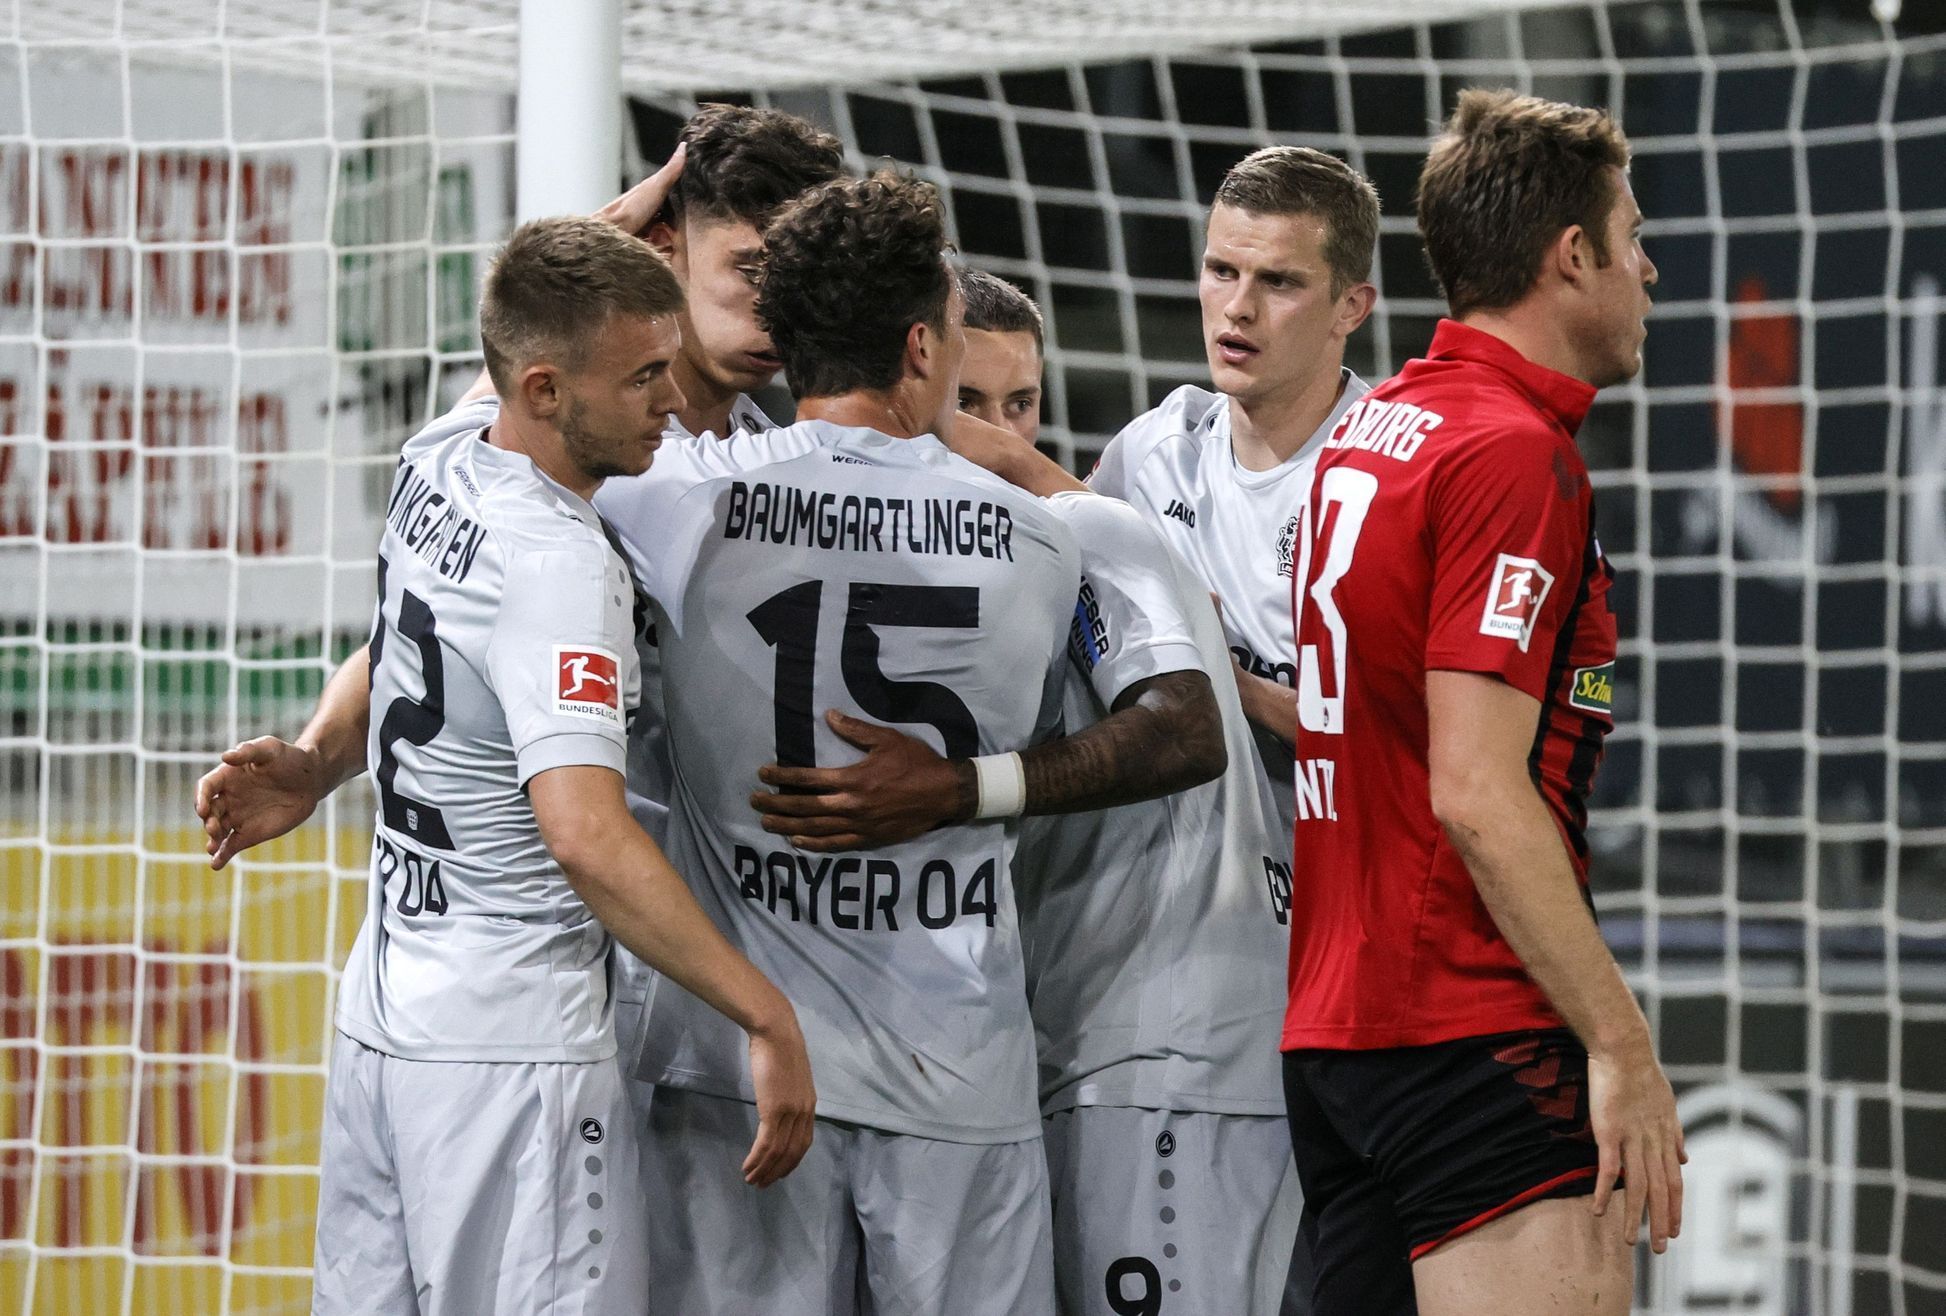 Hráči Bayeru Leverkusen slaví gól v duelu ve Freiburgu